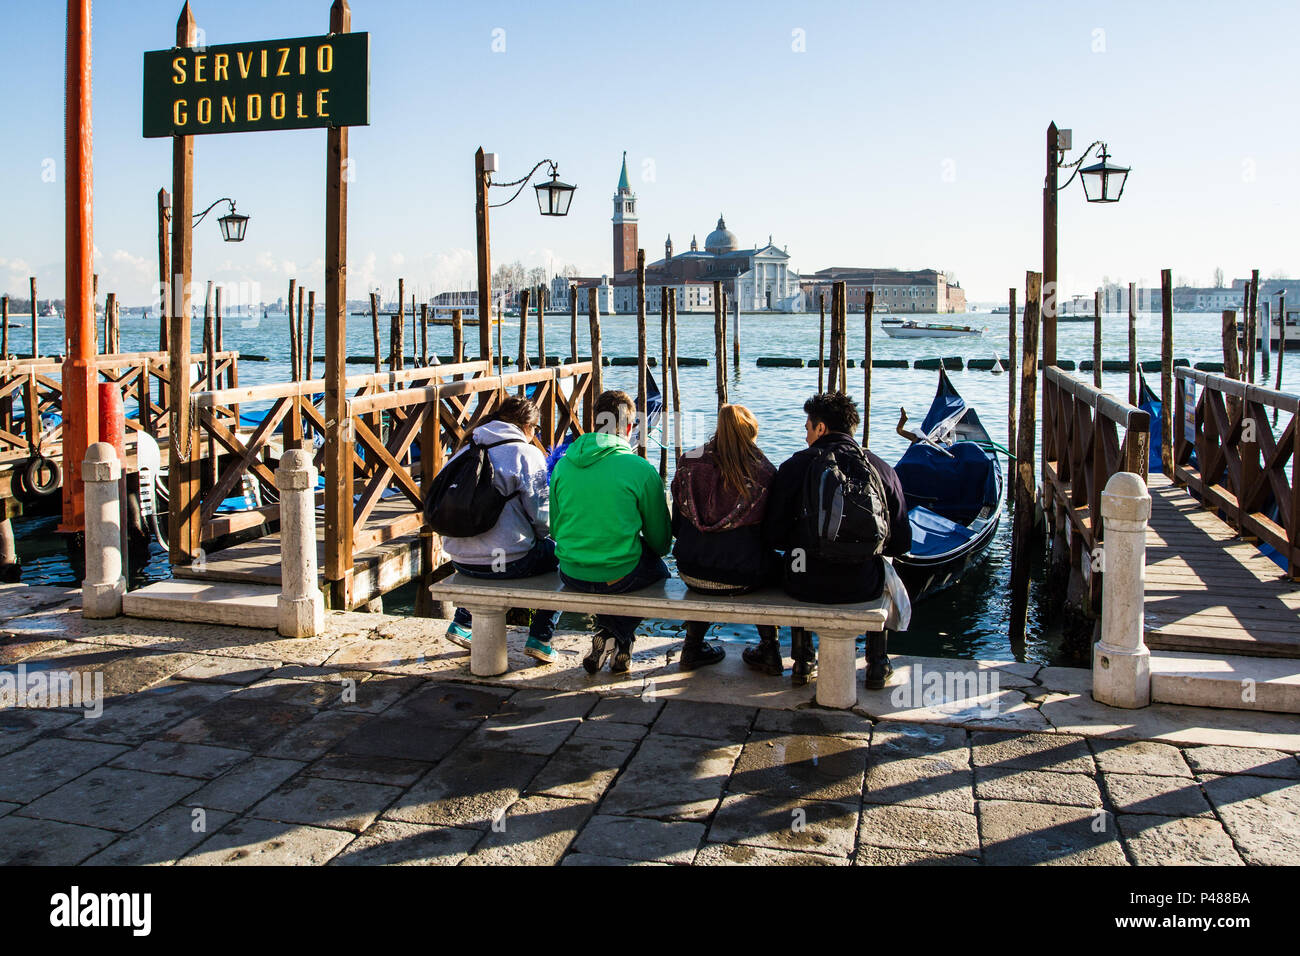 Pessoas esperando por gôndola na Praça São Marcos (Piazza San Marco) e Ilha de San Giorgio Maggiore (Isola di San Giorgio Maggiore) ao fundo. Veneza, Itália - 12/12/2012. Foto: Ricardo Ribas / Fotoarena Stock Photo